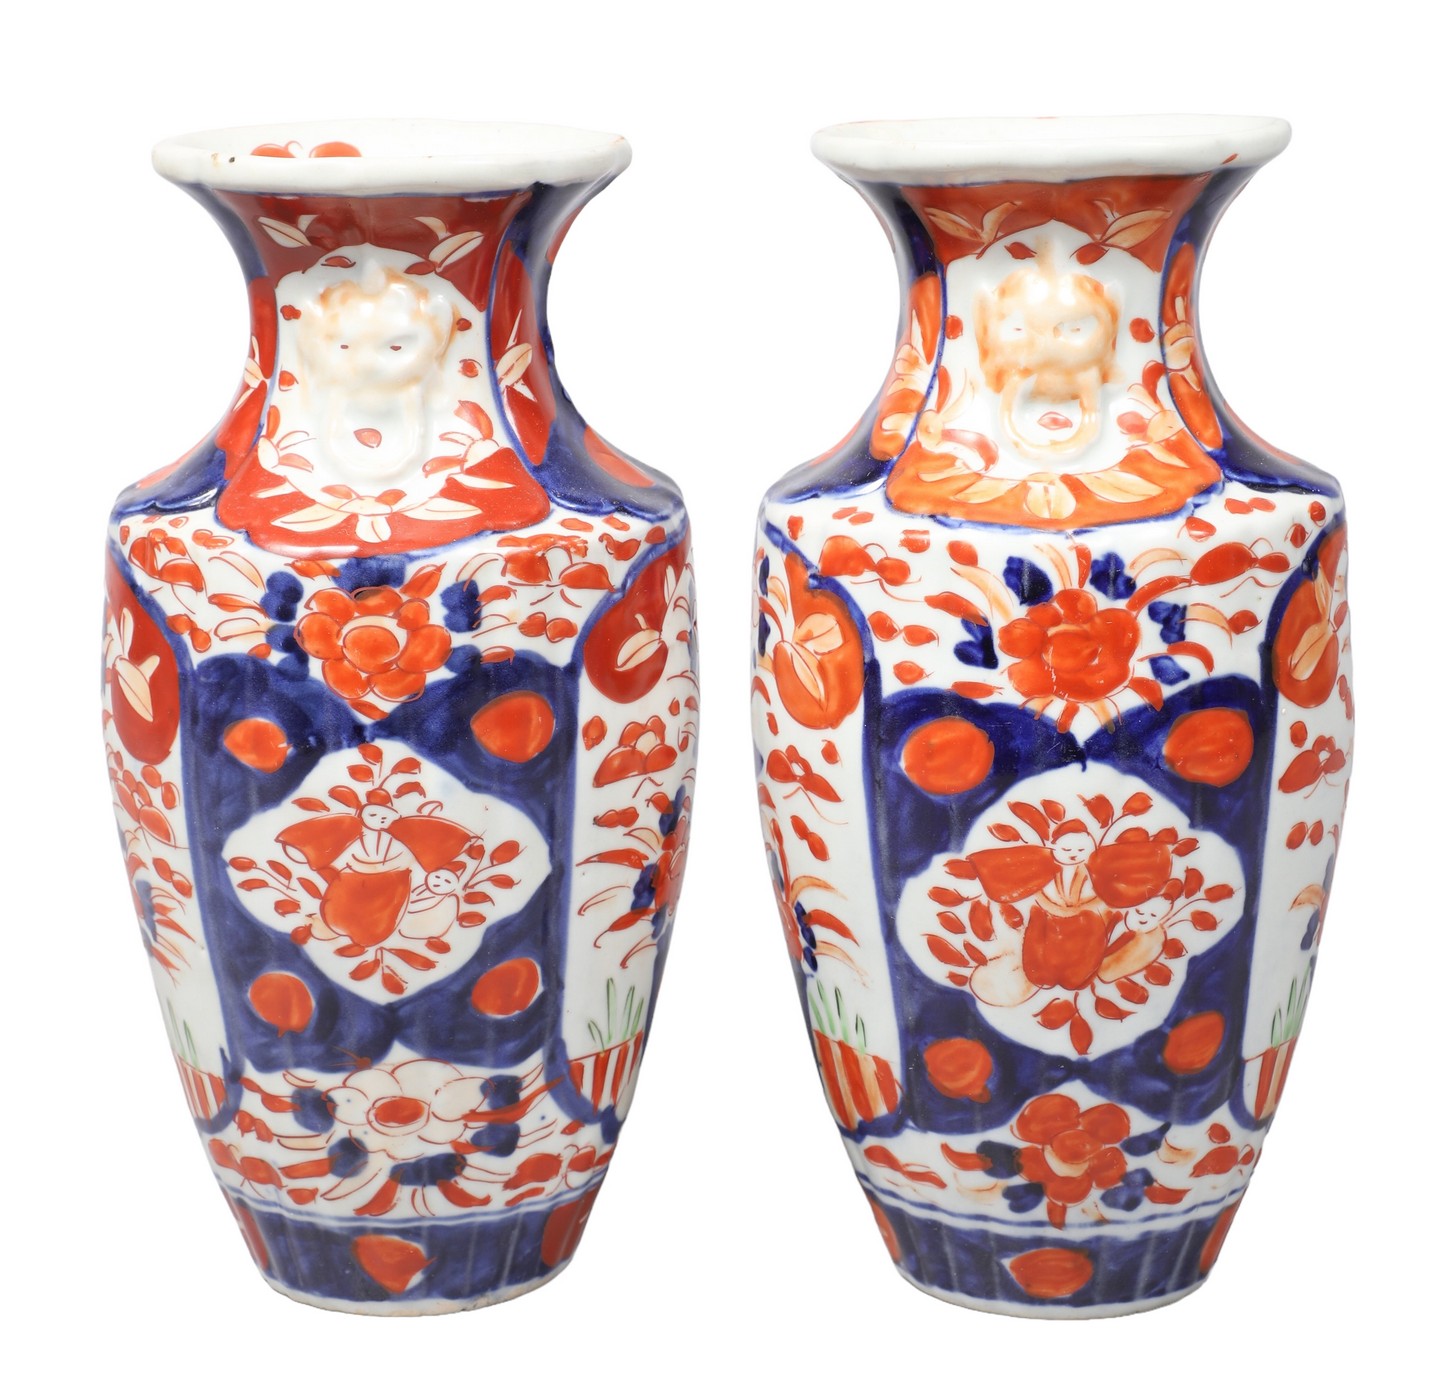 Pair of Japanese Imari porcelain